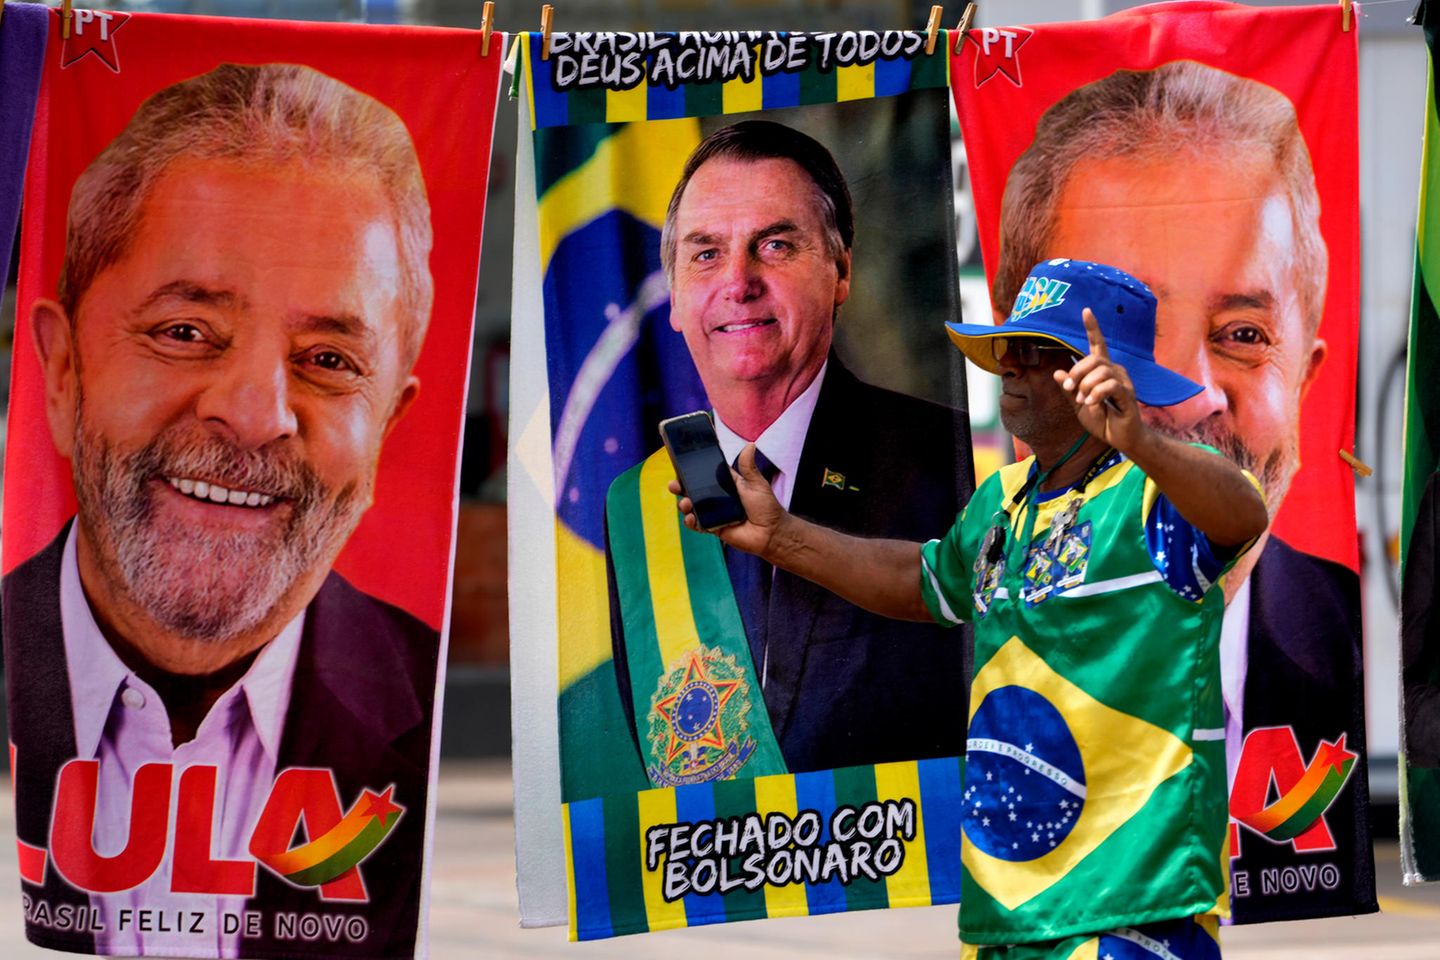 Bei einem Straßenhändler in Brasilia gibt es die Kandidaten auf Handtüchern zu kaufen